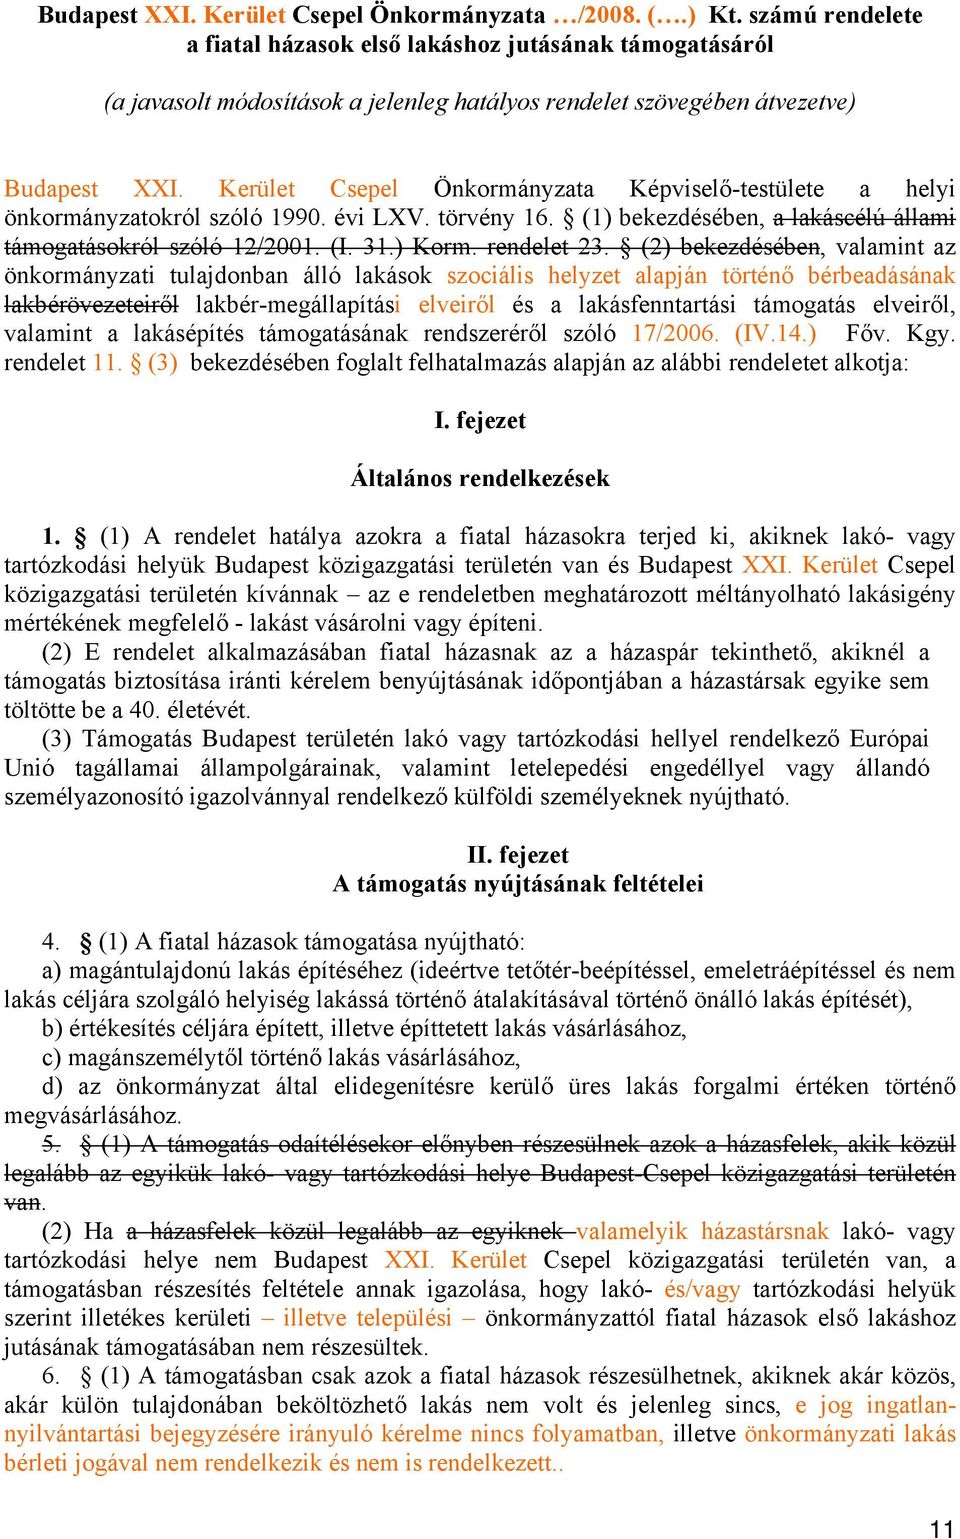 Kerület Csepel Önkormányzata Képviselő-testülete a helyi önkormányzatokról szóló 1990. évi LXV. törvény 16. (1) bekezdésében, a lakáscélú állami támogatásokról szóló 12/2001. (I. 31.) Korm.